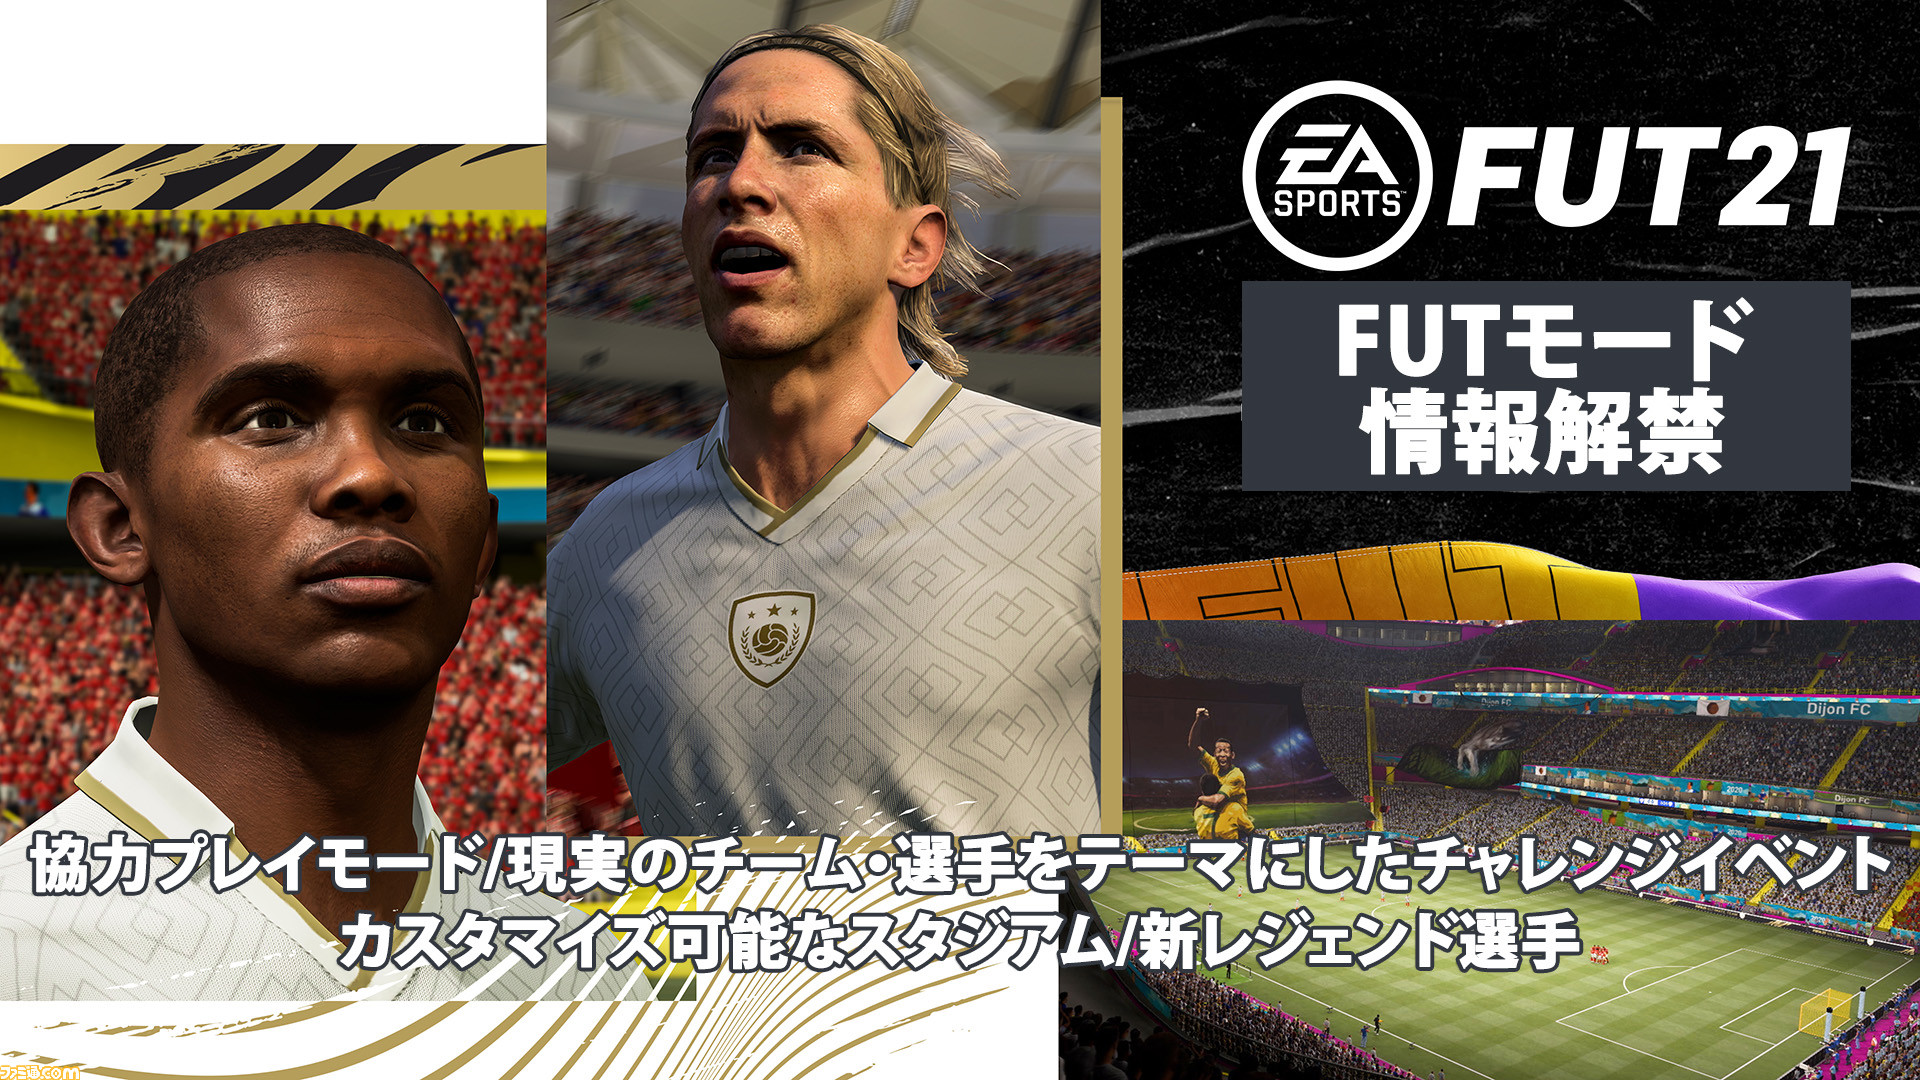 Fifa 21 Futモードの情報が解禁 オンライン協力プレイ対応や現実のチーム 選手をテーマにしたチャレンジイベントなどを追加予定 ファミ通 Com